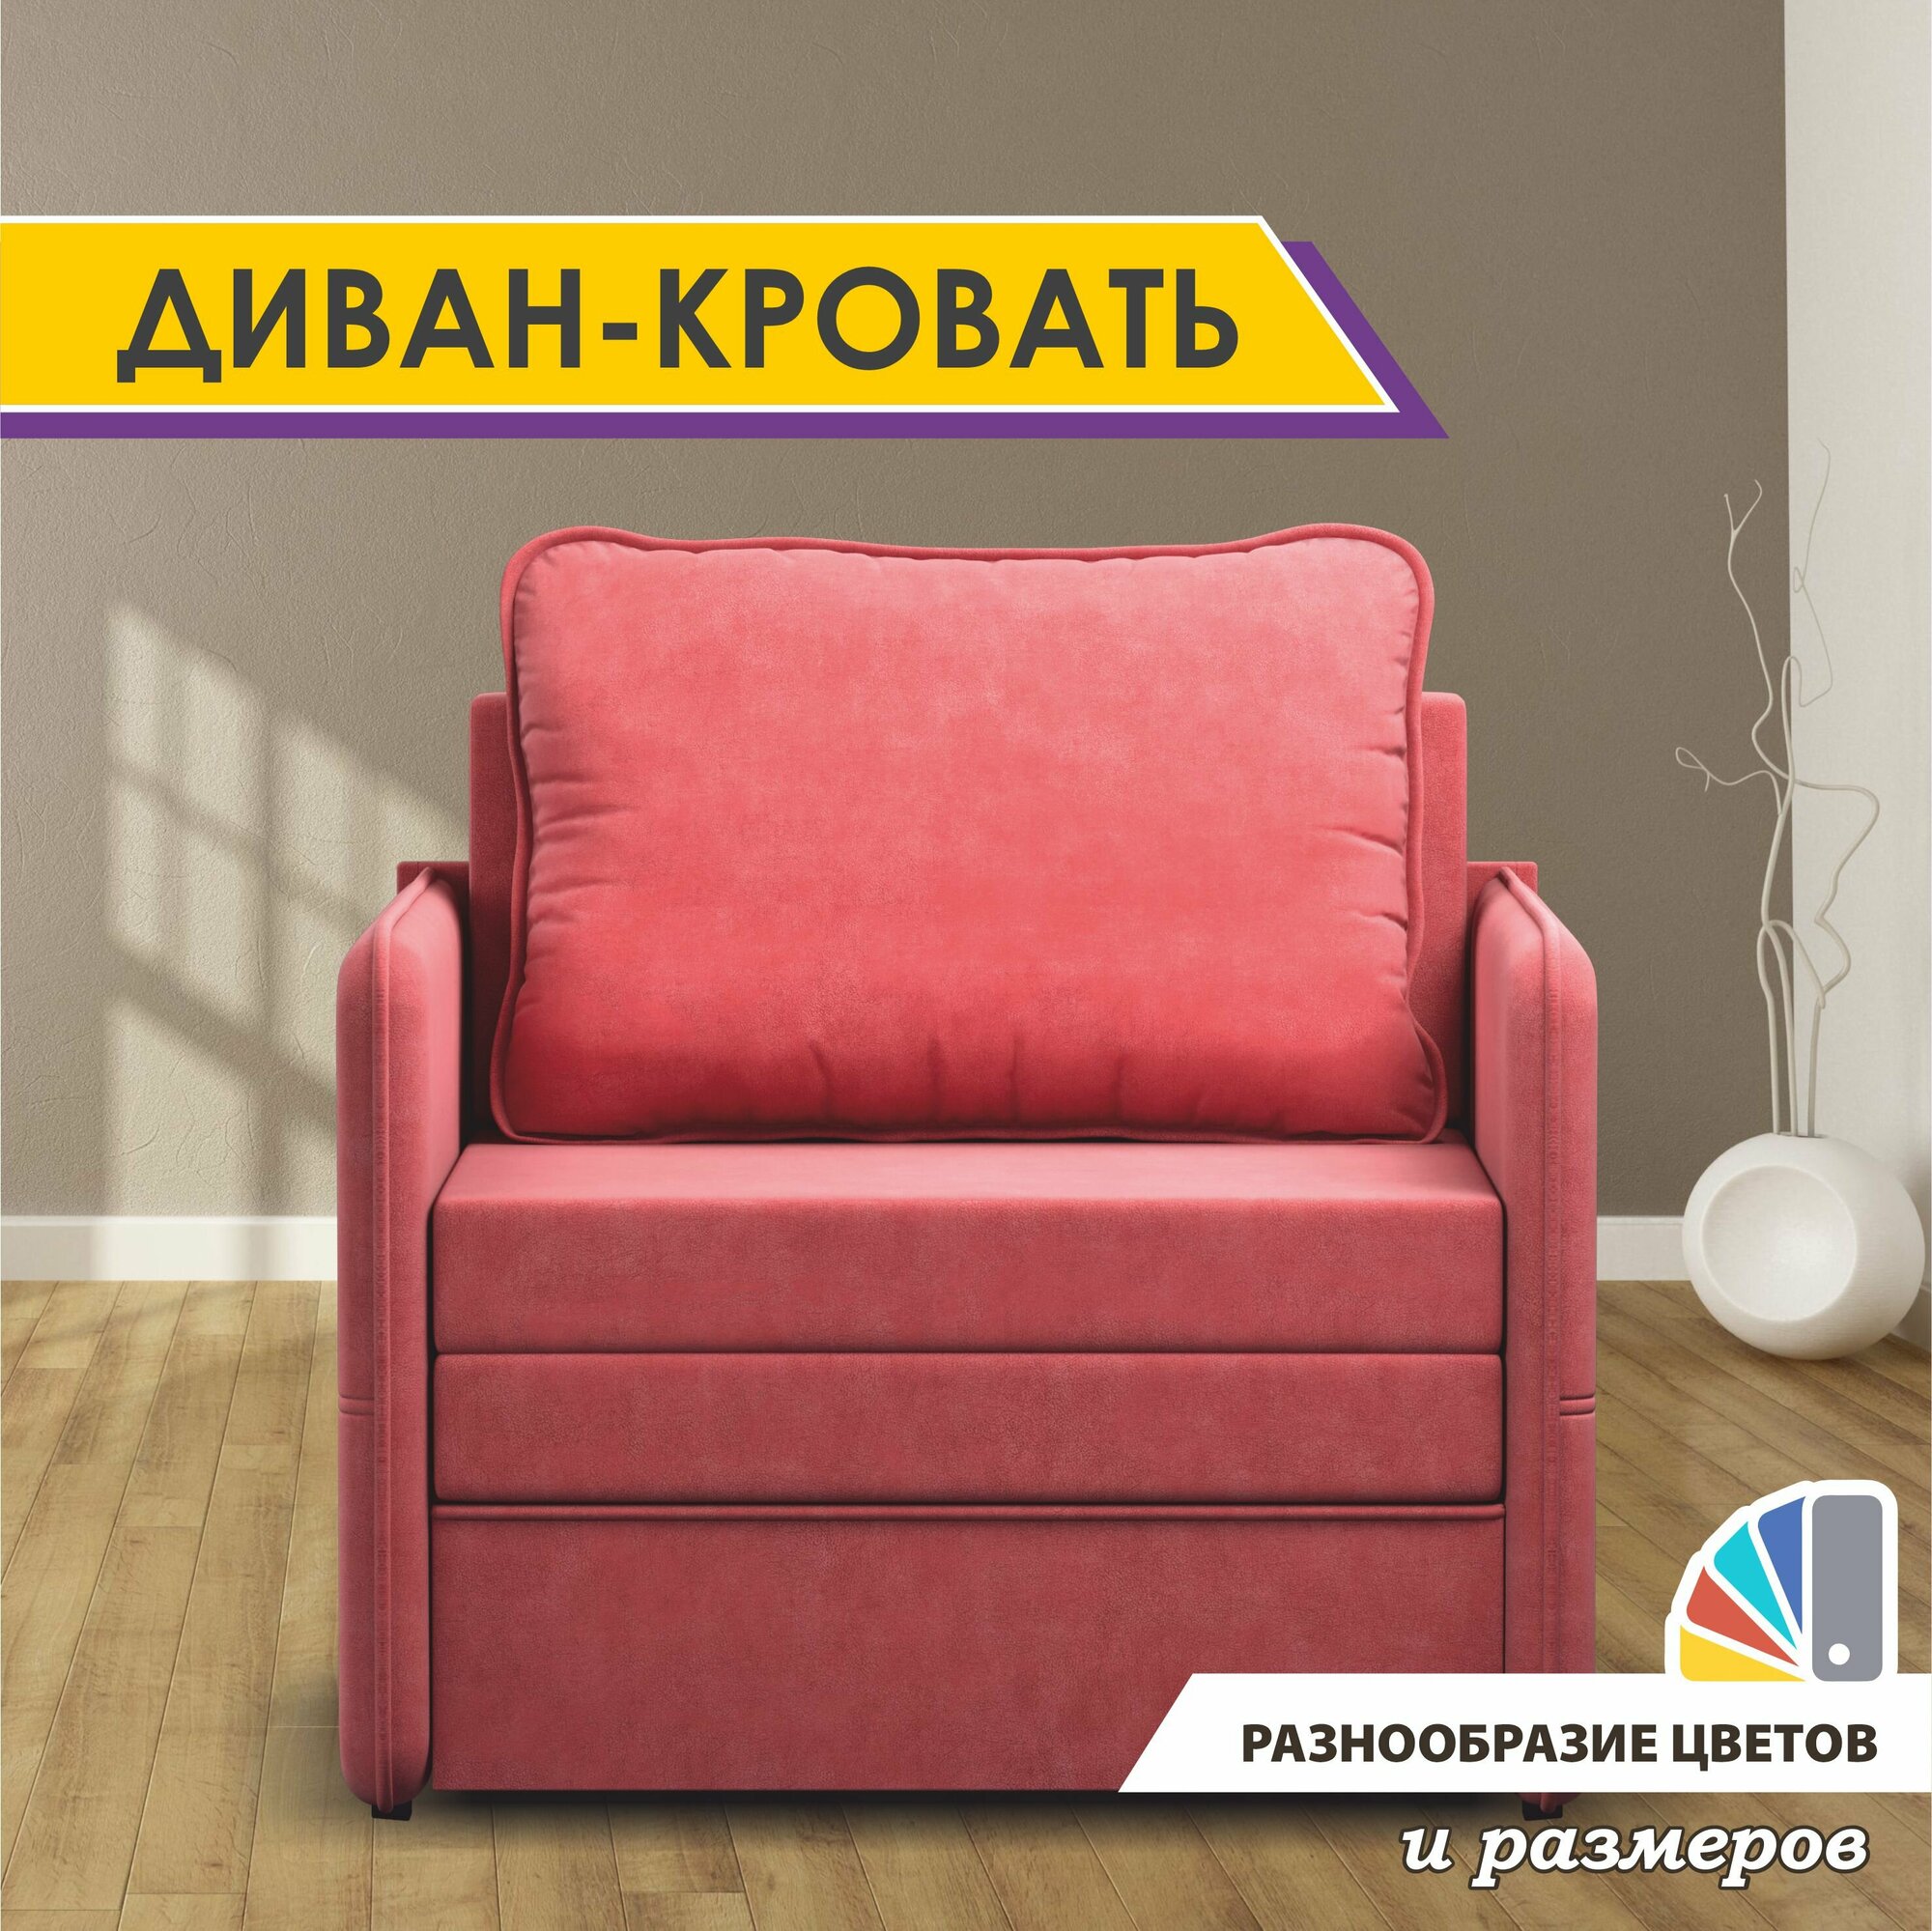 Раскладной диван-кровать GOSTIN Barni 92х82х75, выкатной диван трансформер для кухни, детский диван, Berry